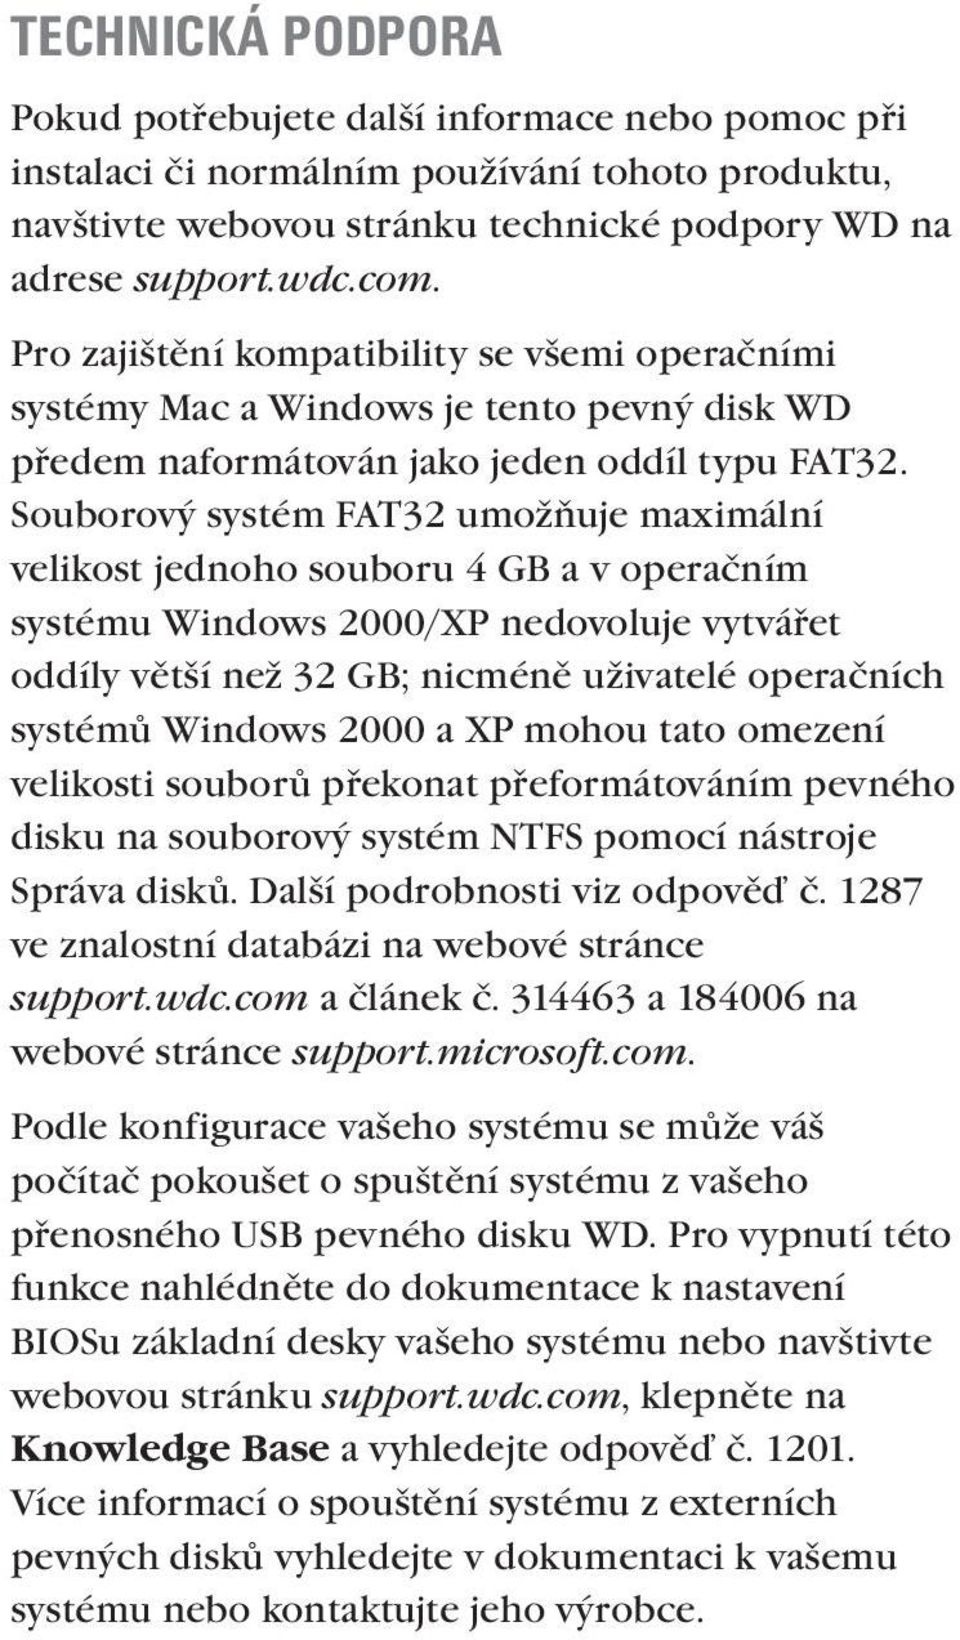 Souborový systém FAT32 umožňuje maximální velikost jednoho souboru 4 GB a v operačním systému Windows 2000/XP nedovoluje vytvářet oddíly větší než 32 GB; nicméně uživatelé operačních systémů Windows